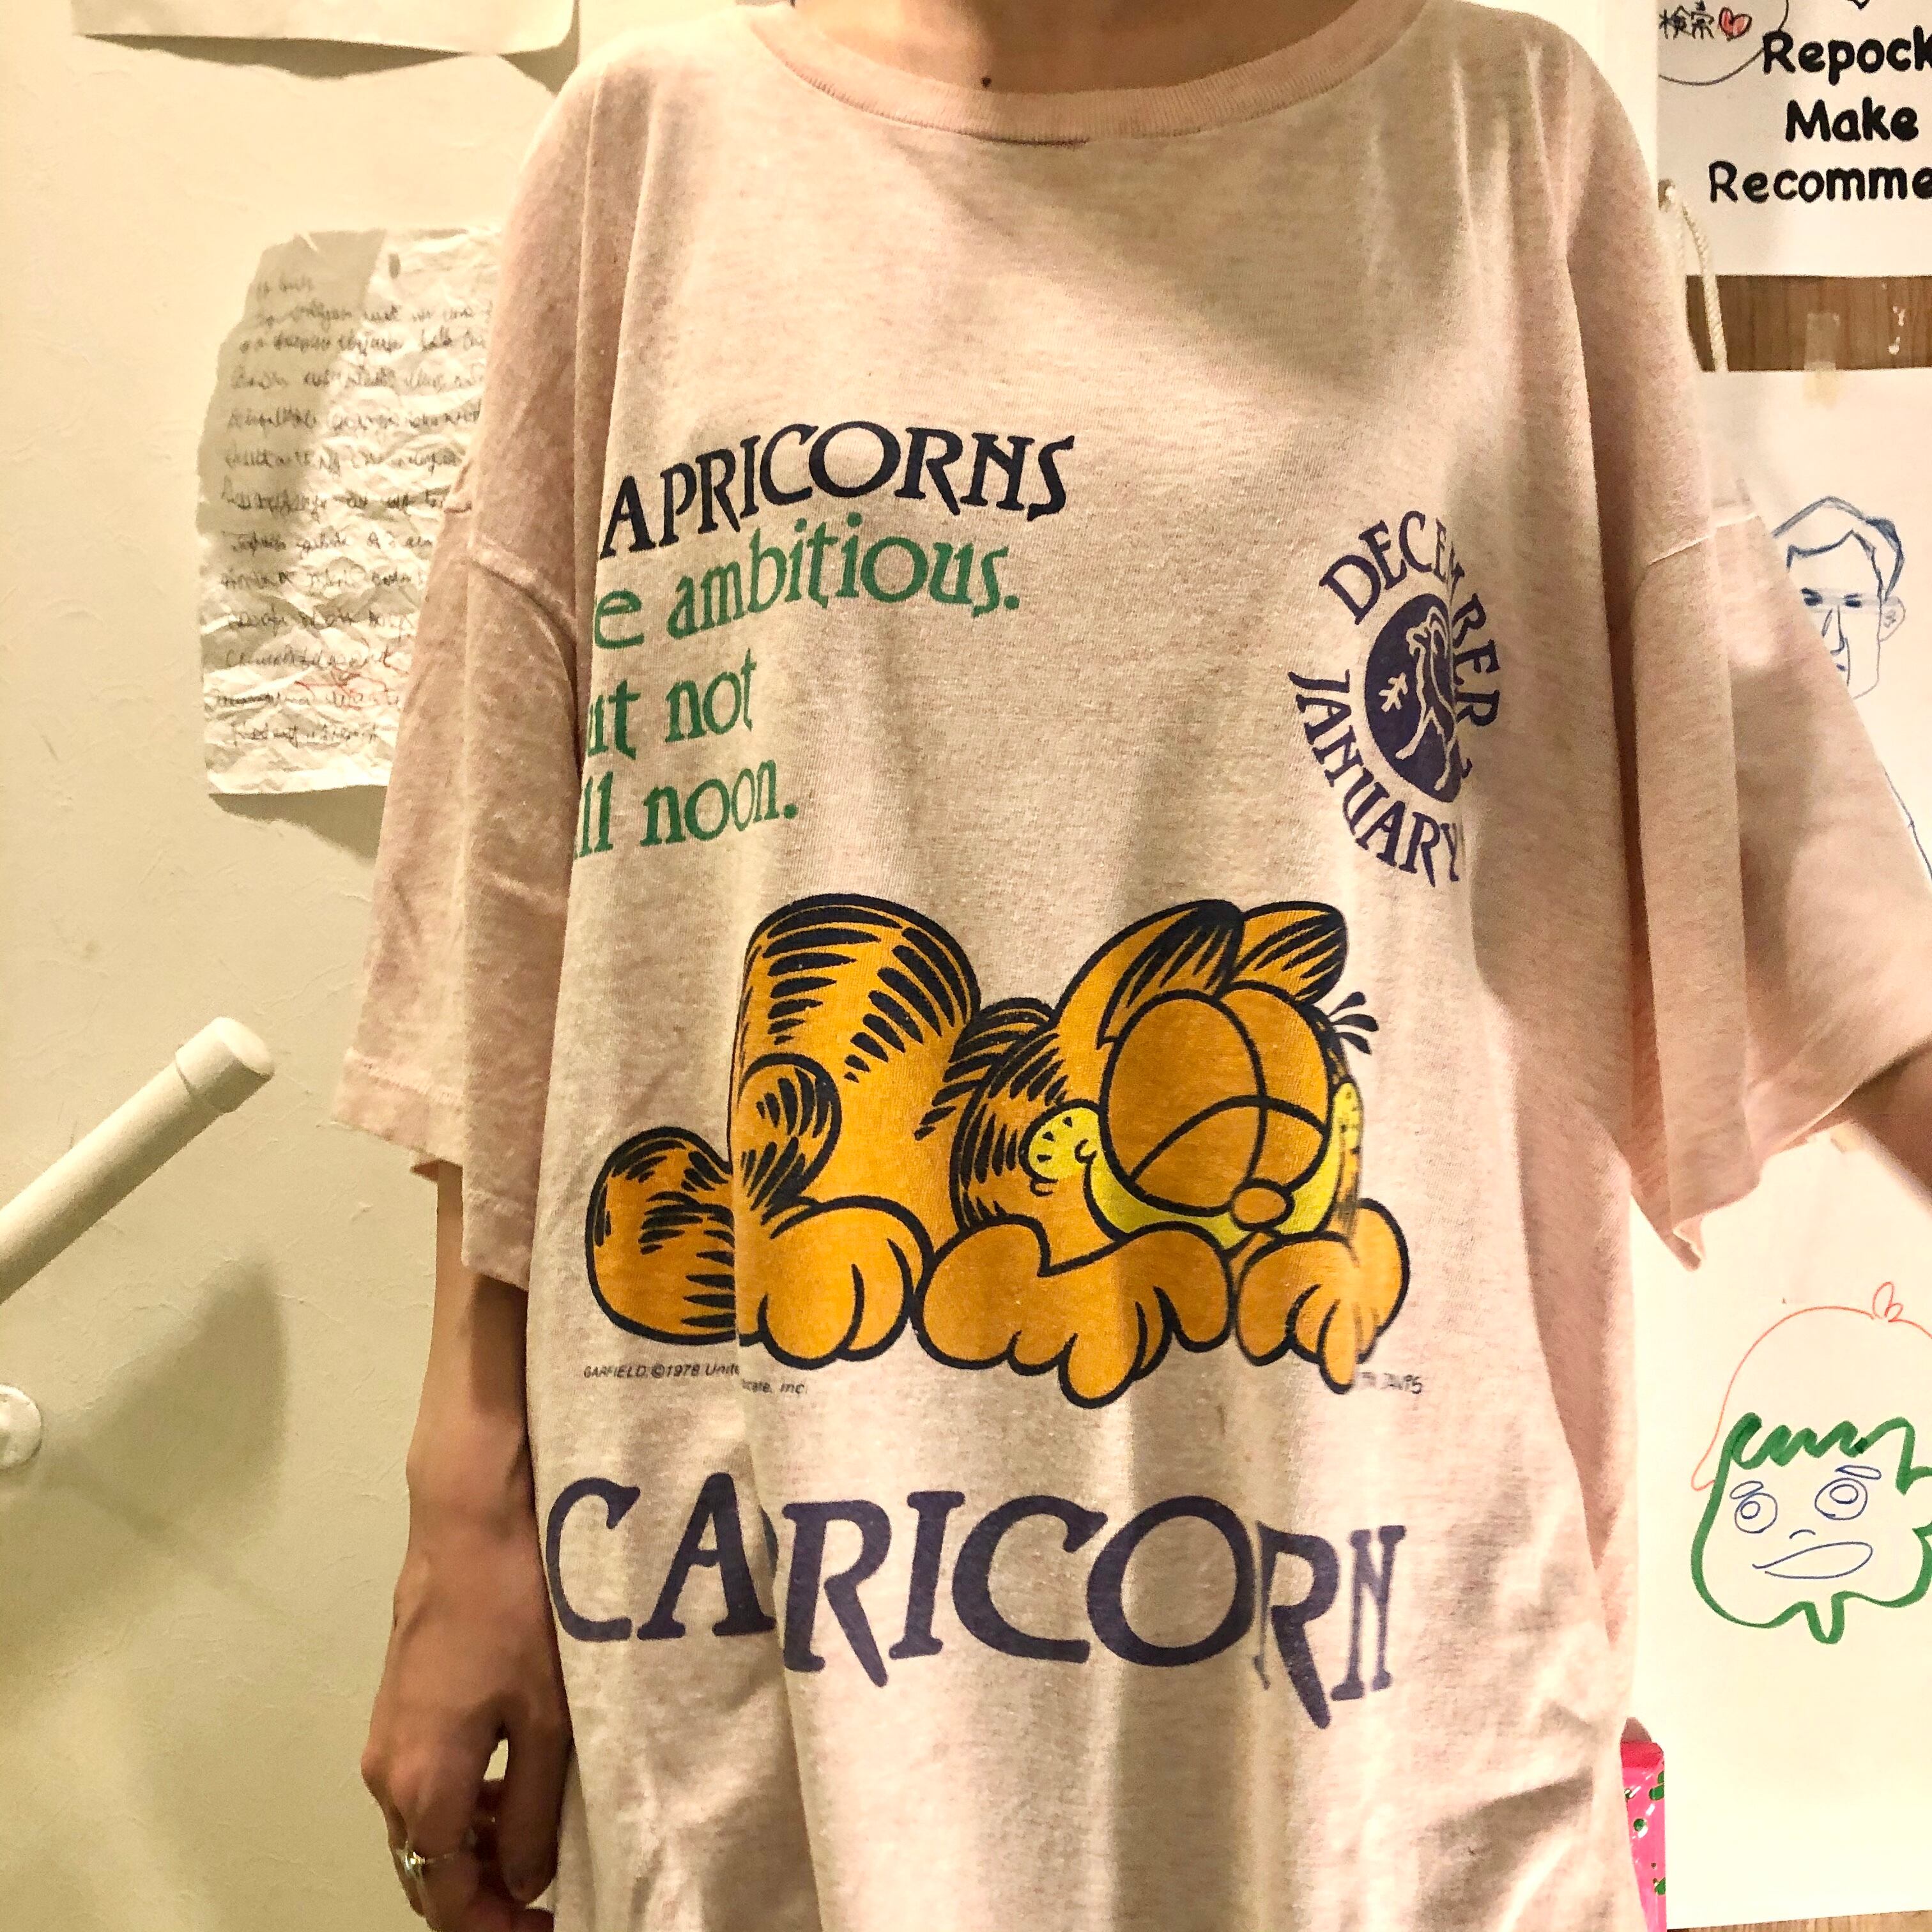 GARFIELD CAPRICORN Tシャツ | repock make recommend